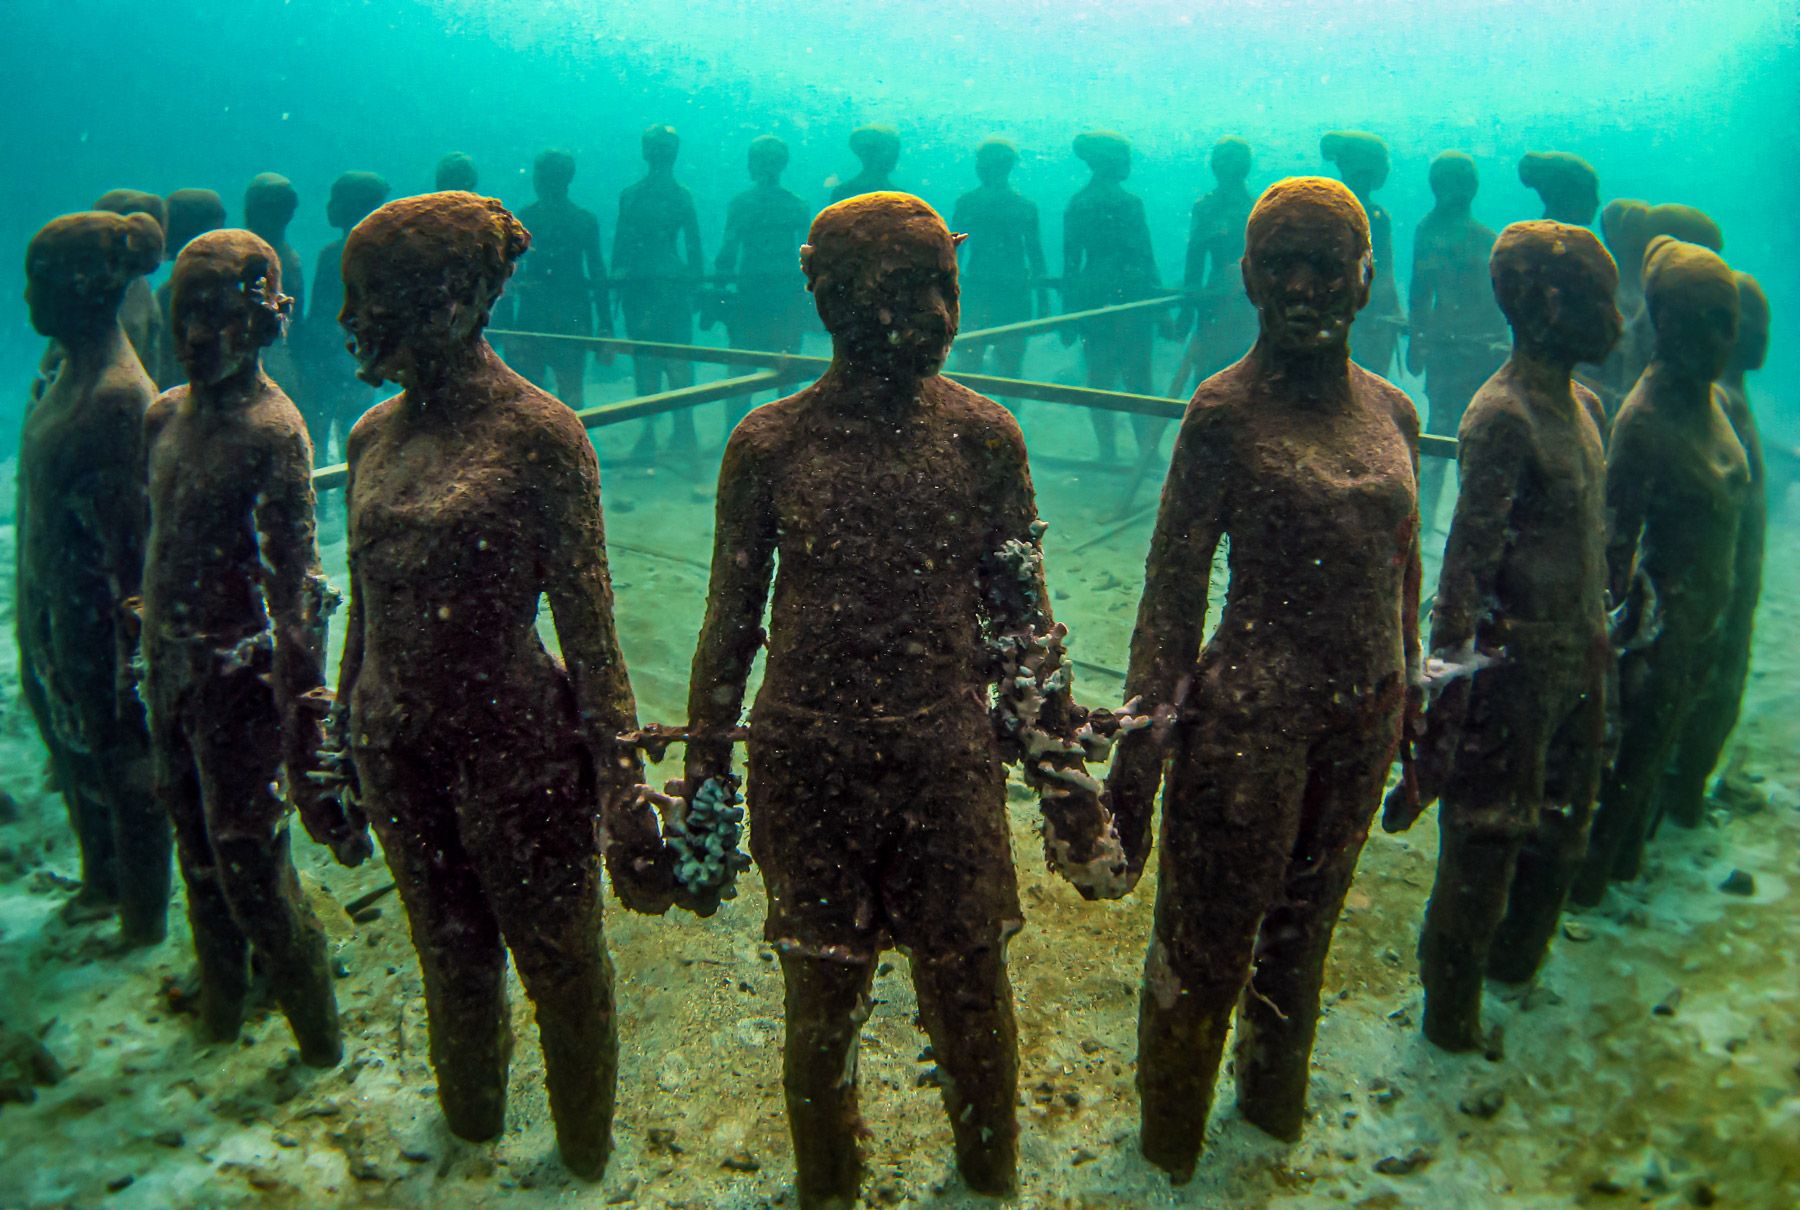 Grenada Underwater Sculpture Park children holding hands in a circle